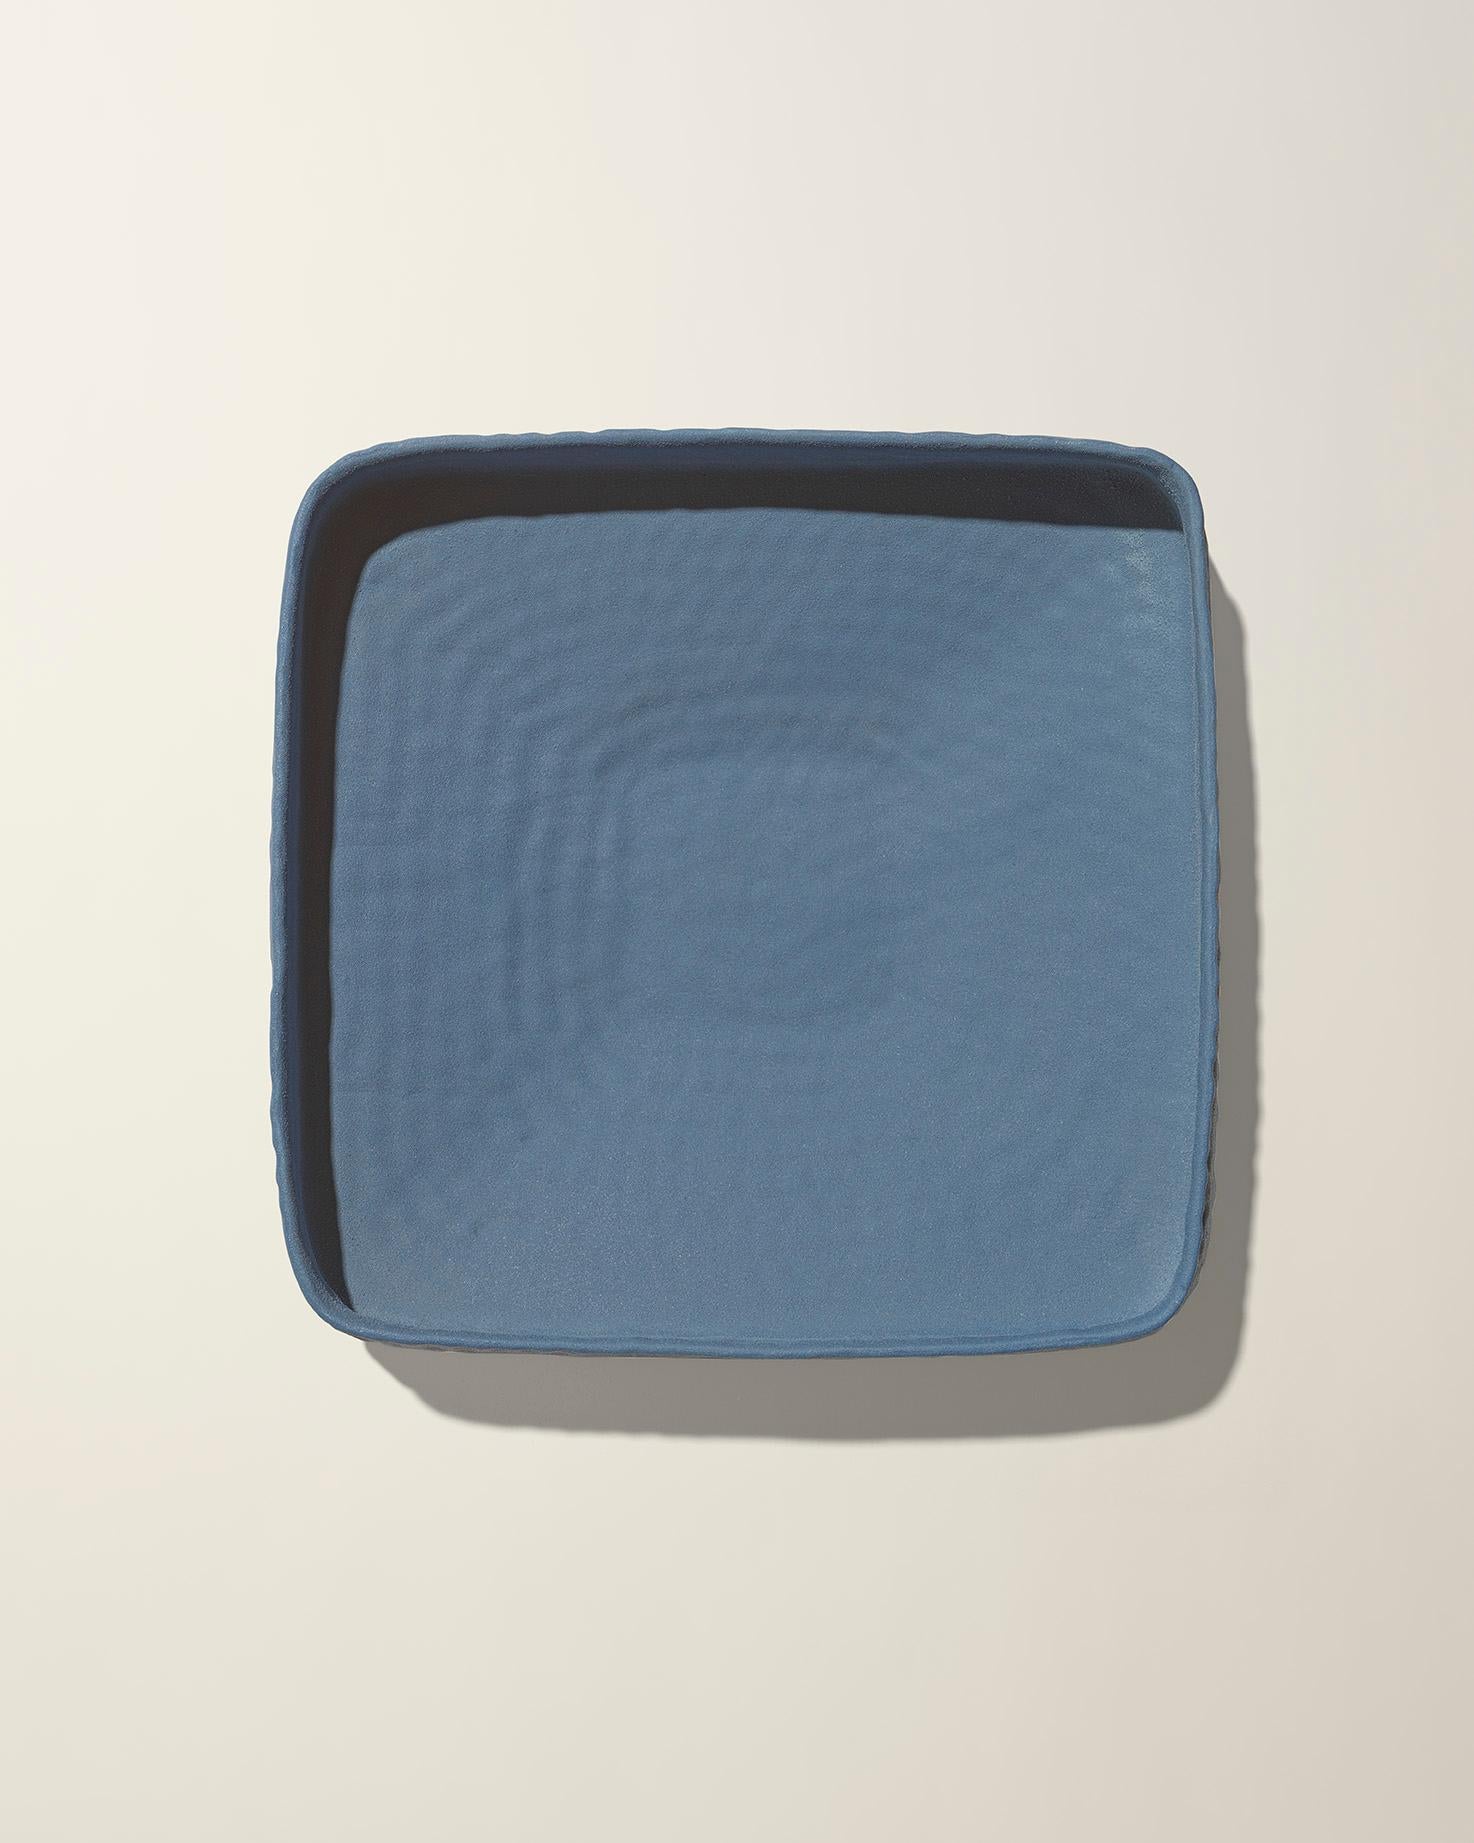 Diese in Italien hergestellte, niedrige, gehämmerte Schale in himmelblauer, matter Farbe wurde von Andrea Anastasio in der historischen Bottega Cercamica Gatti 1928 in Faenza, Italien, entworfen, die sich auf die Herstellung von Keramikkunst